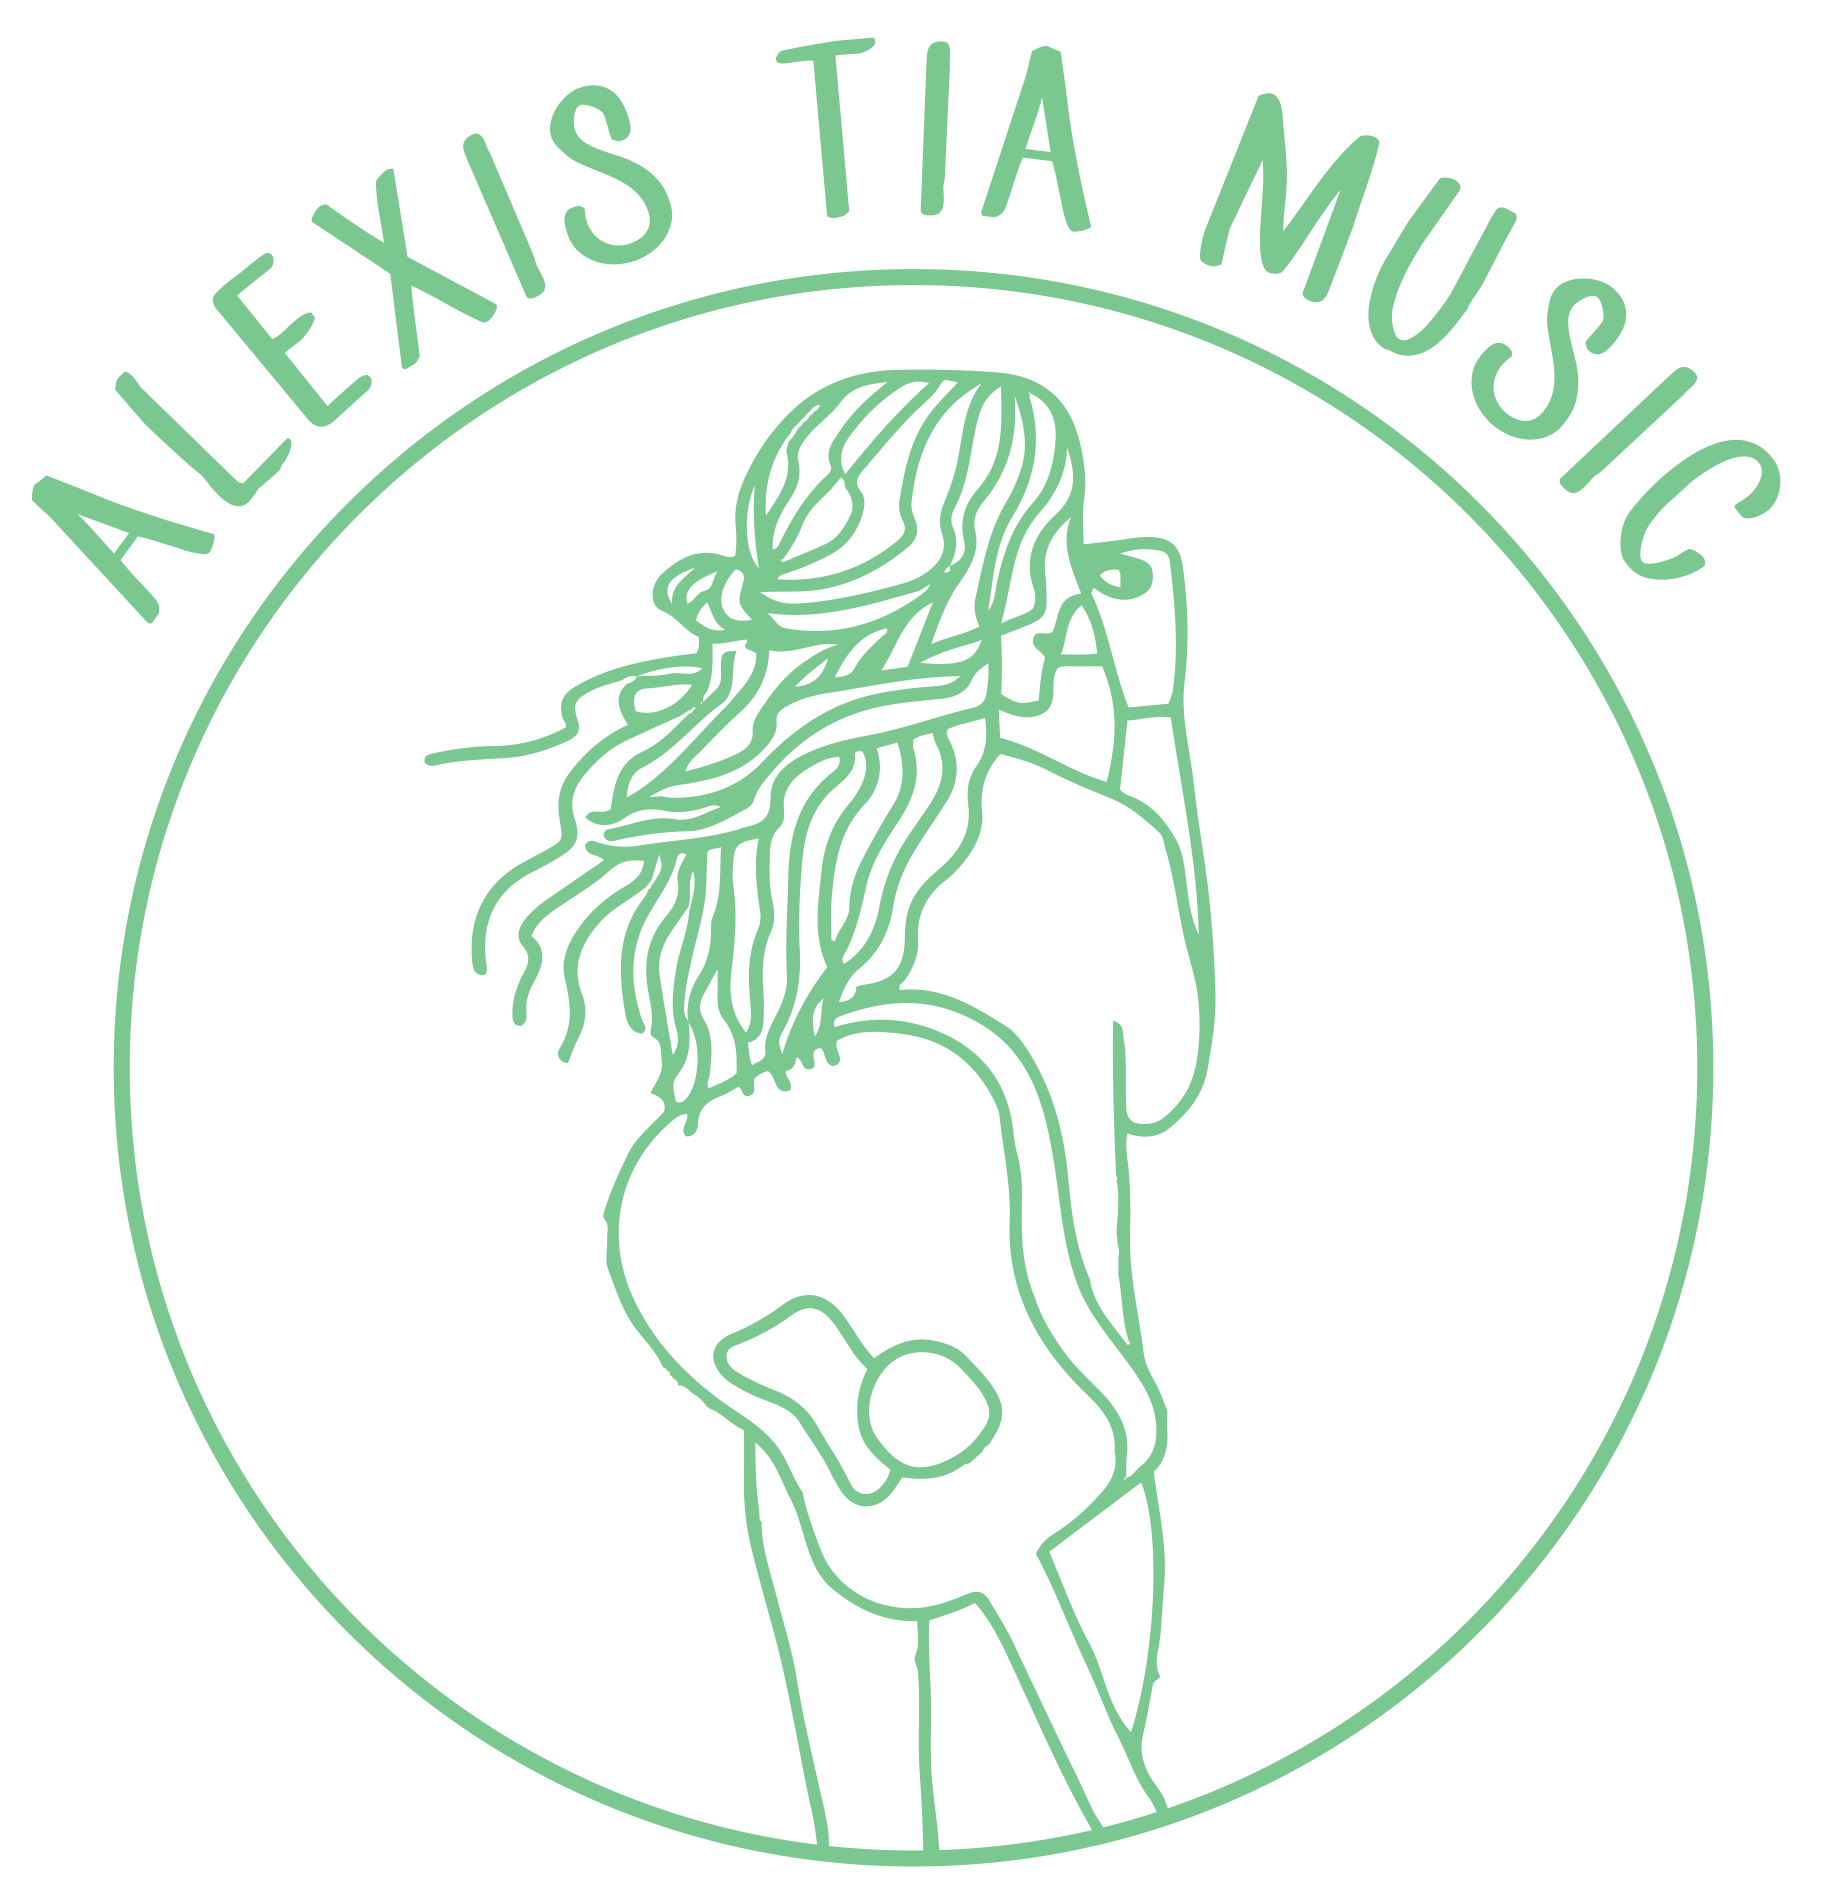 Alexis Tia Music